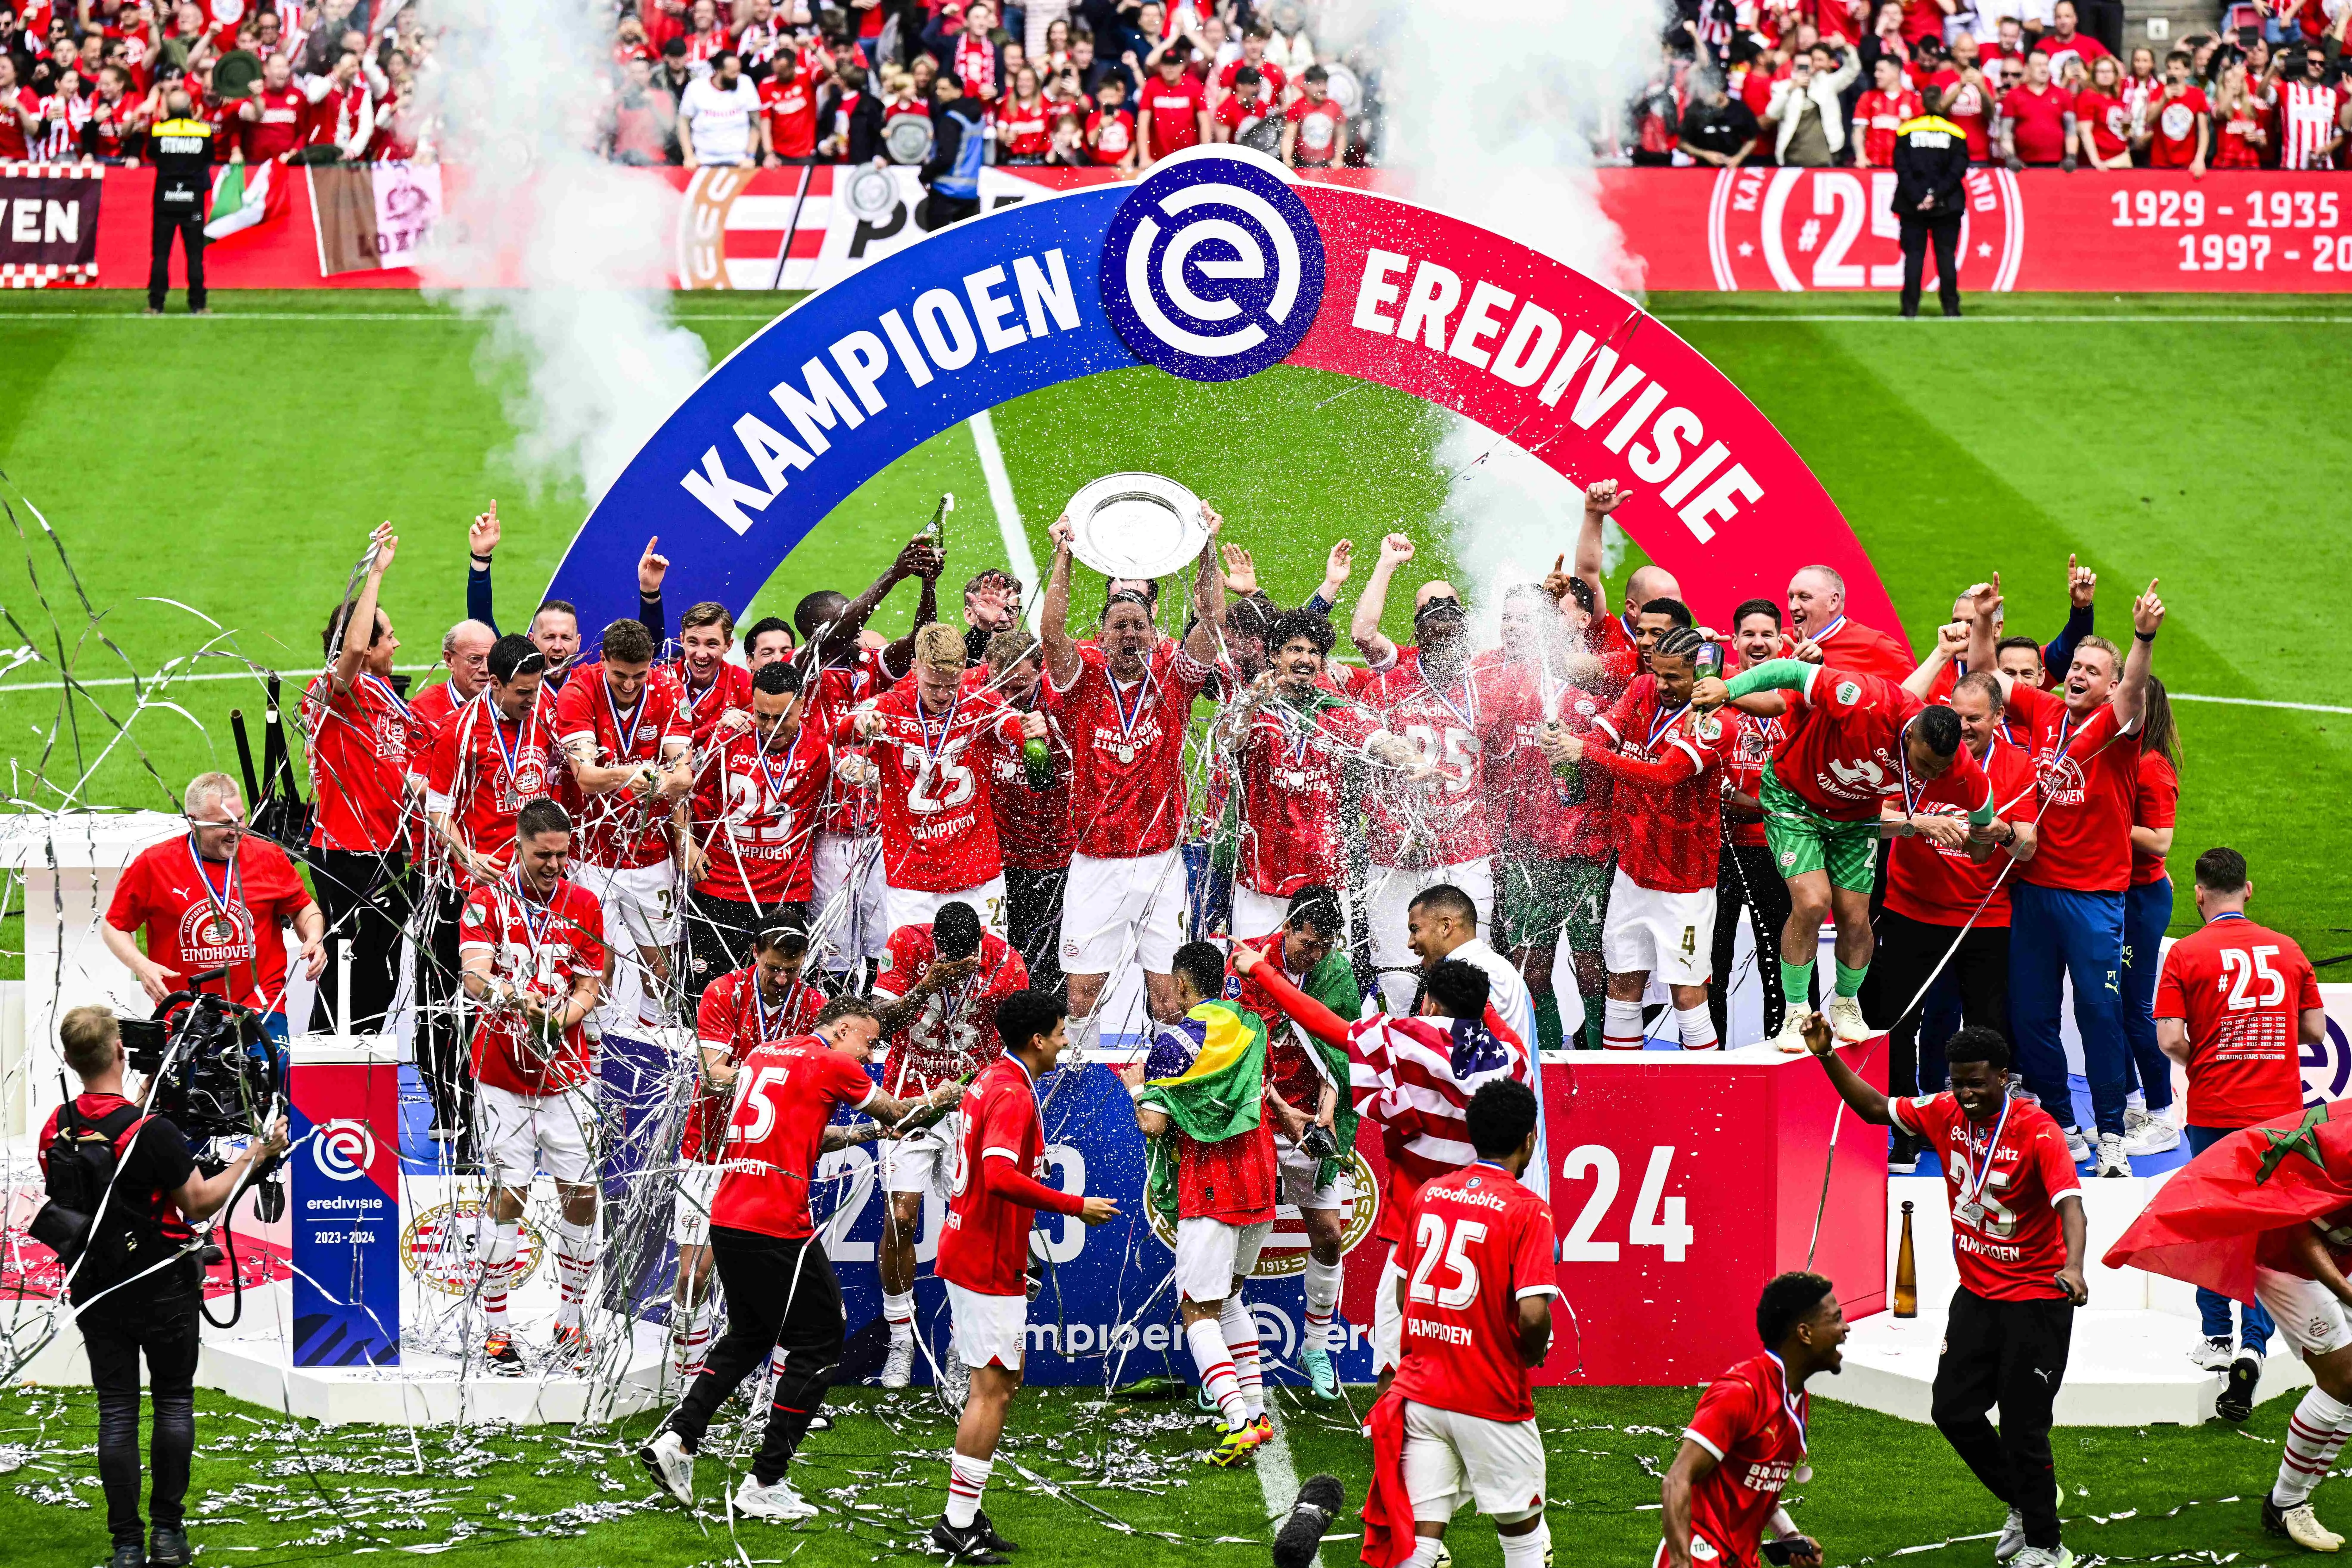 Le PSV Eindhoven champion des Pays-Bas après sa victoire face au Sparta Rotterdam